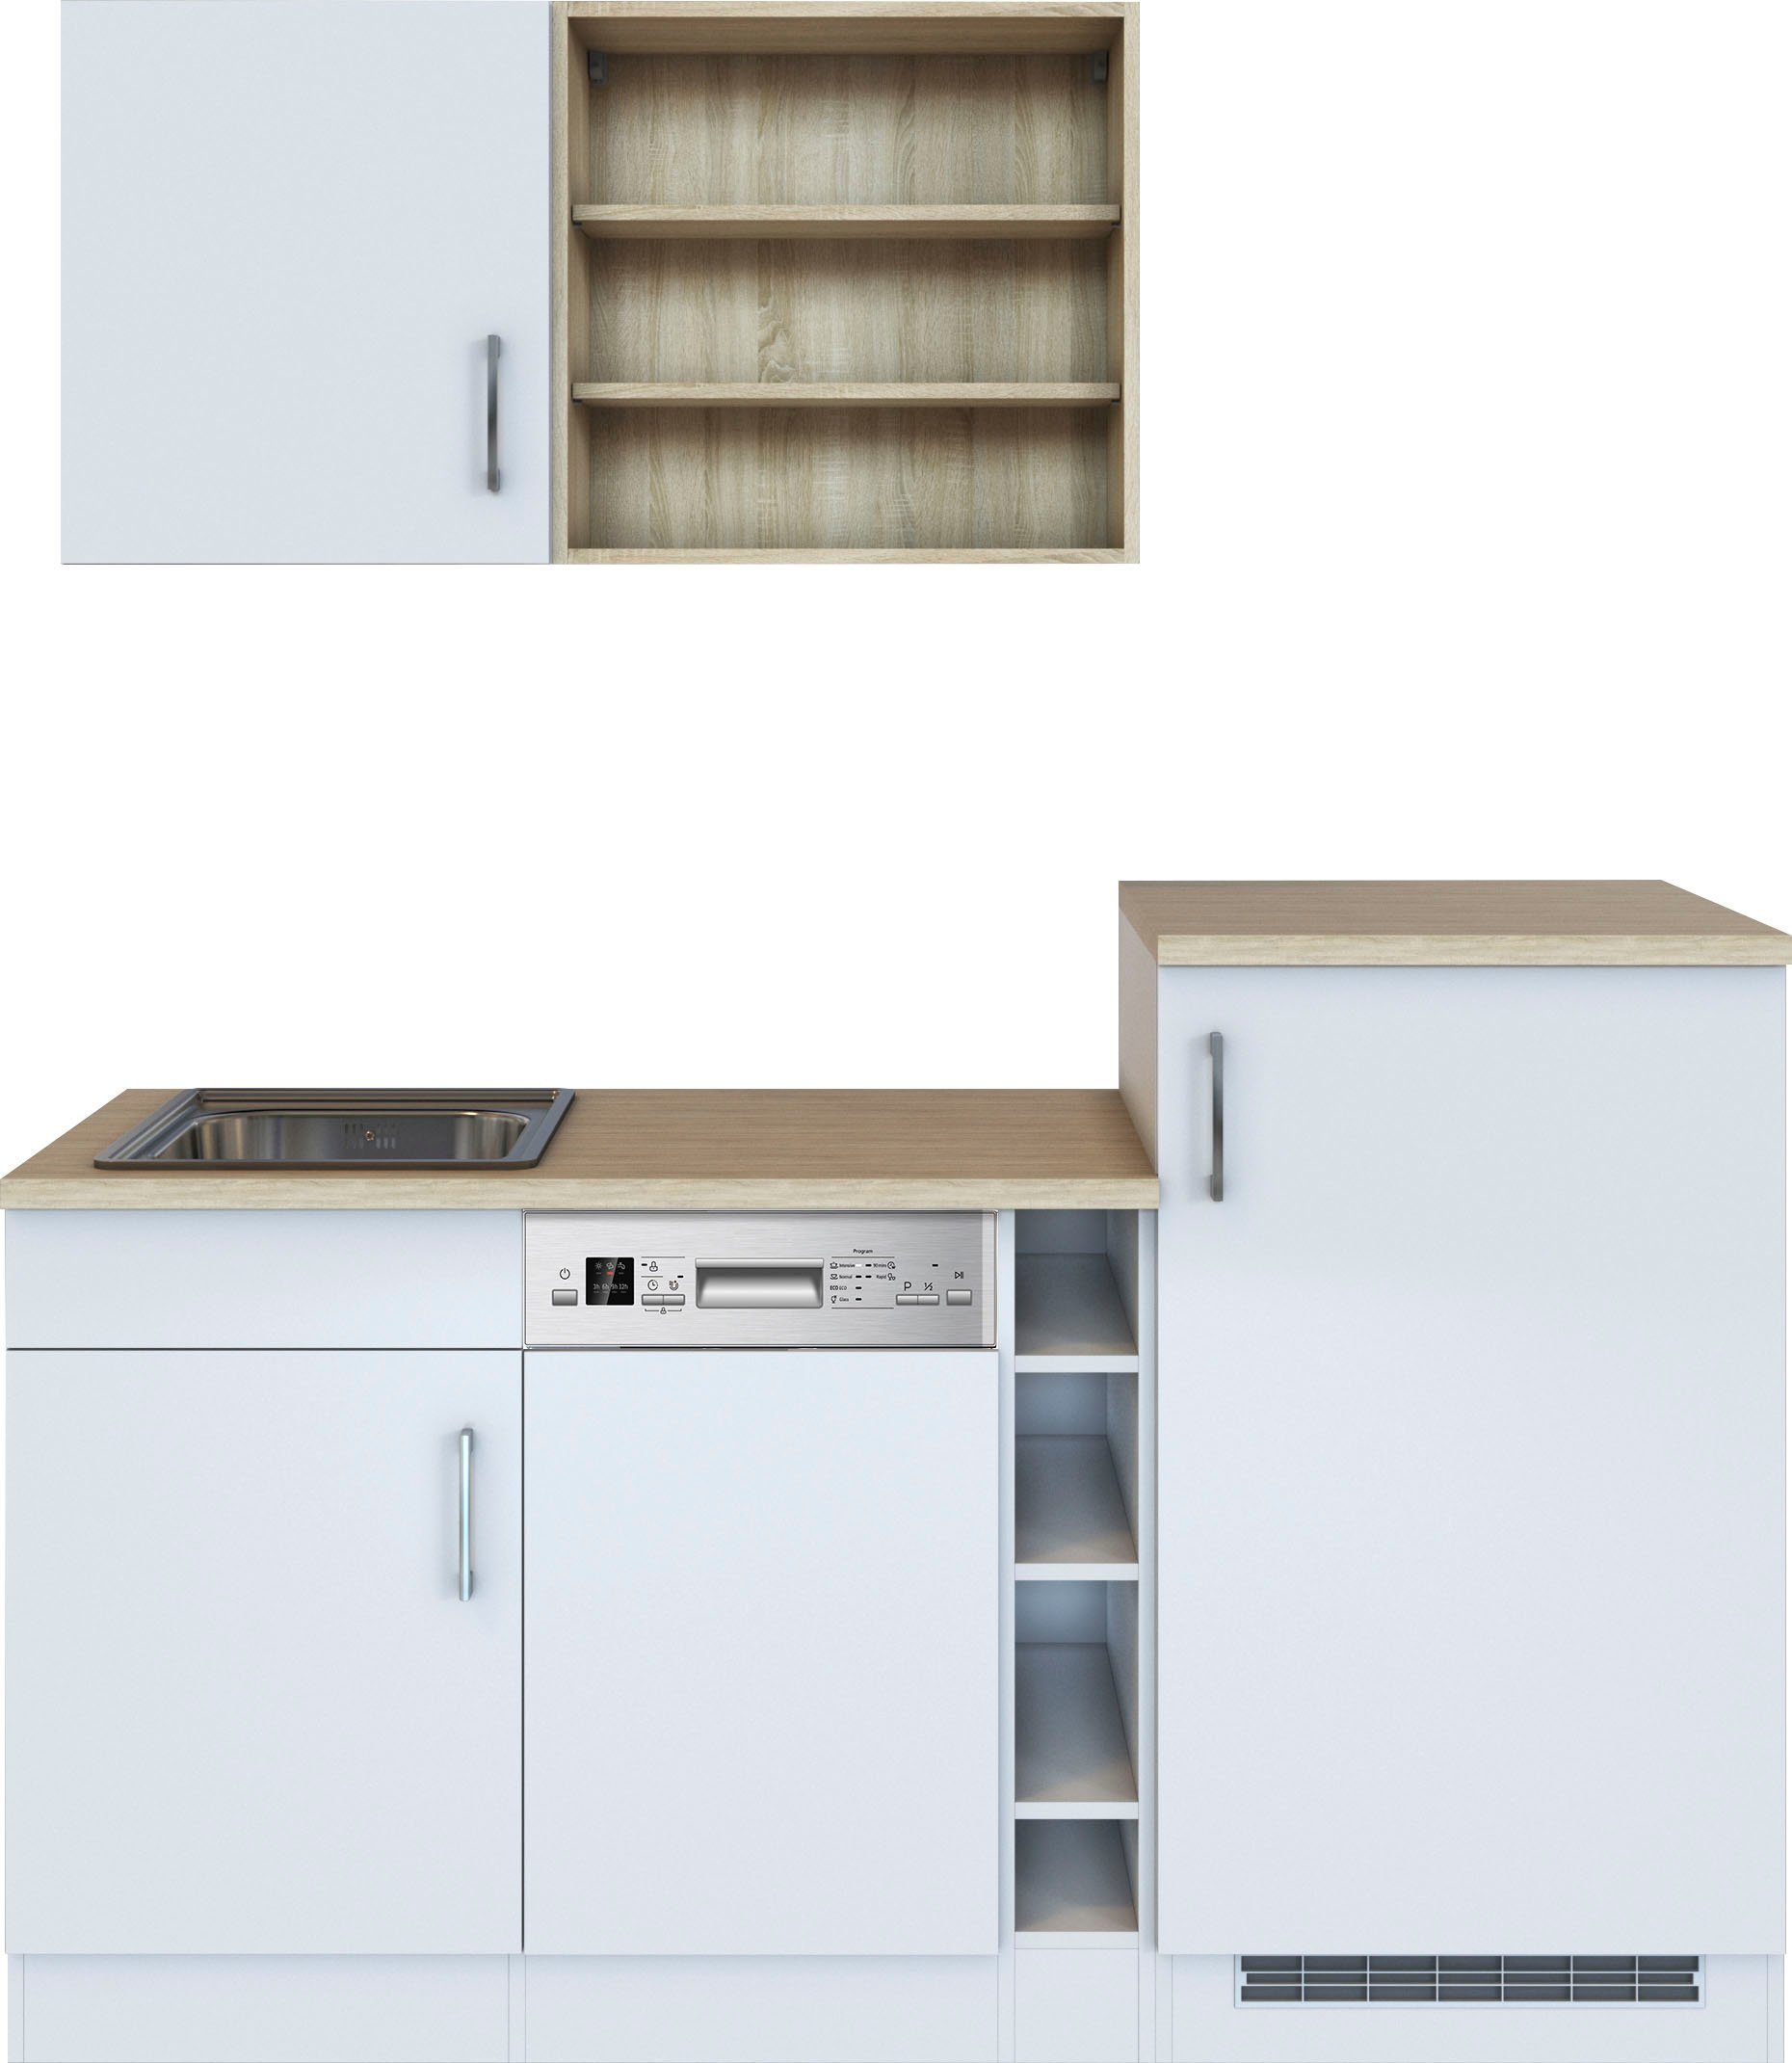 HELD MÖBEL Küche Mali, Breite 170 cm, mit E-Geräten, Inklusive schmalen  Geschirrspüler (45 cm)